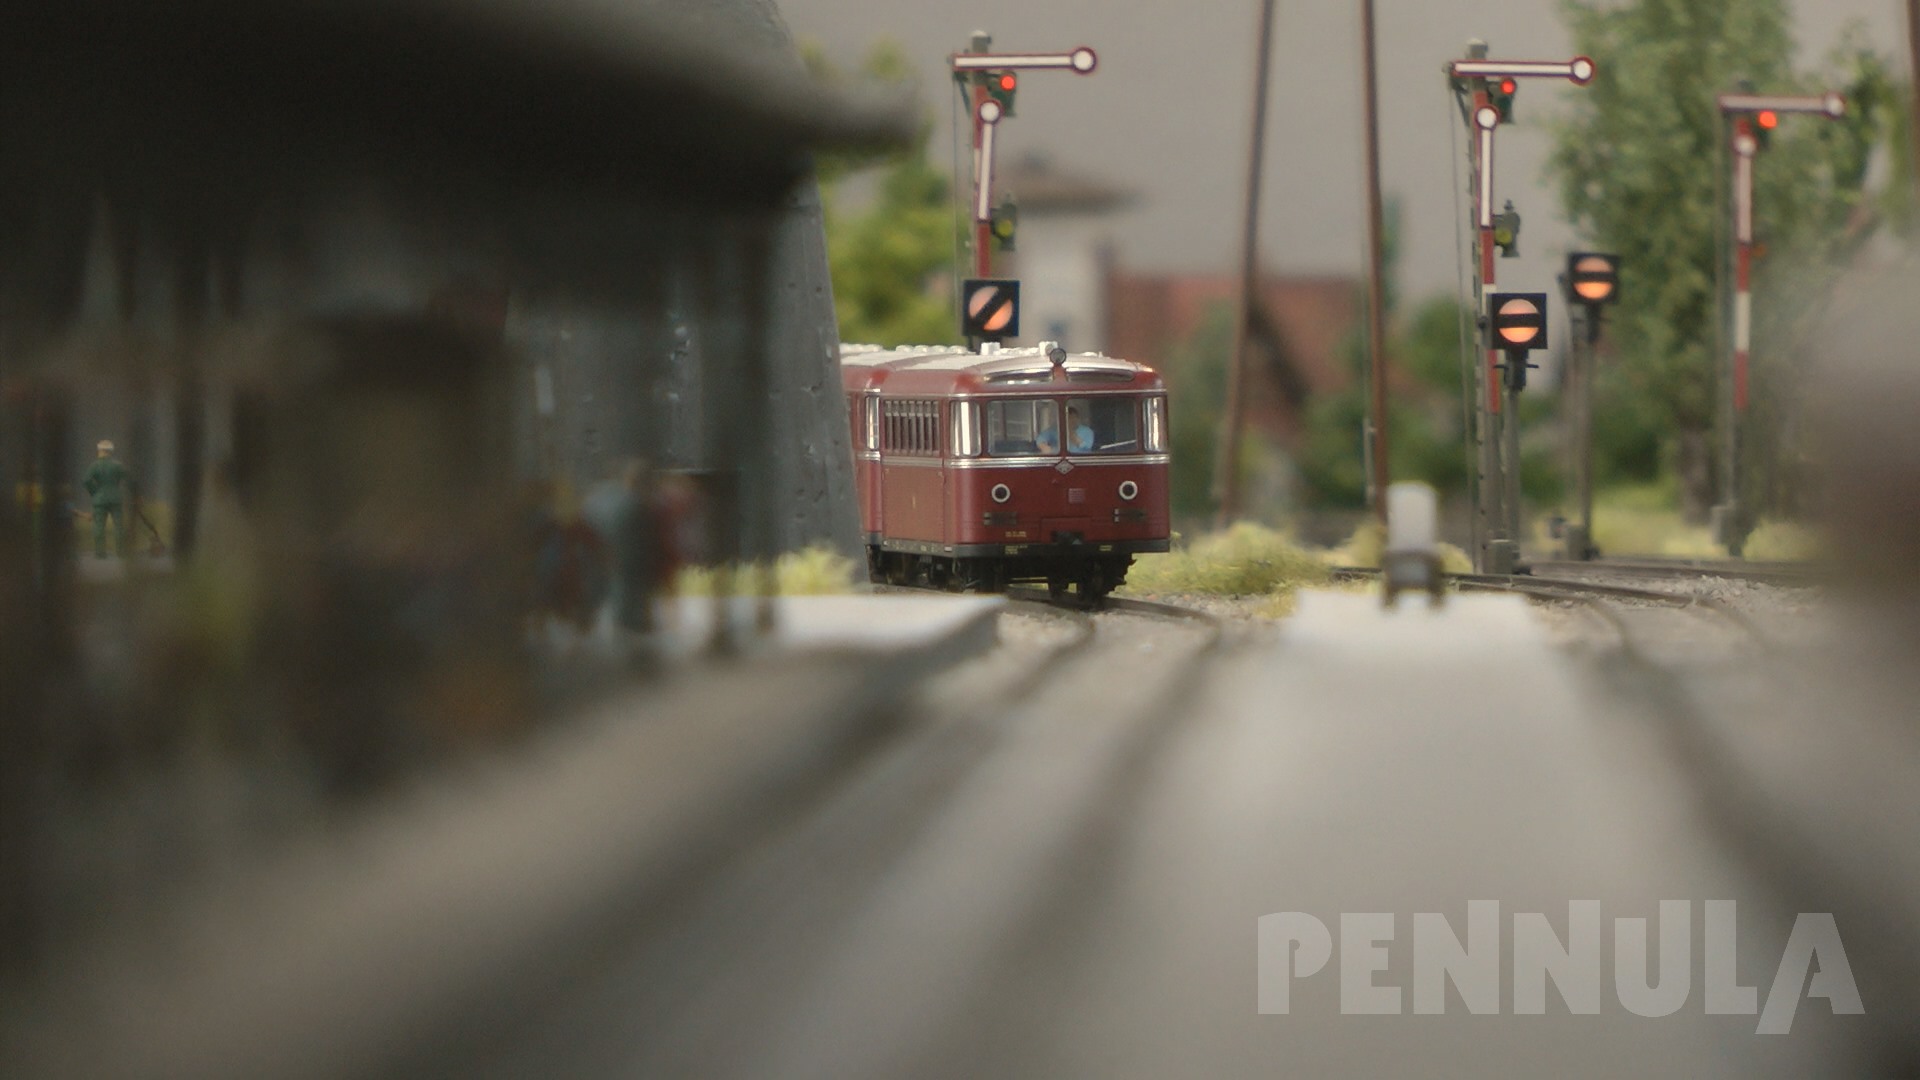 Als es noch die Deutsche Bundesbahn gab: Modelleisenbahnen in einem Land vor unserer Zeit